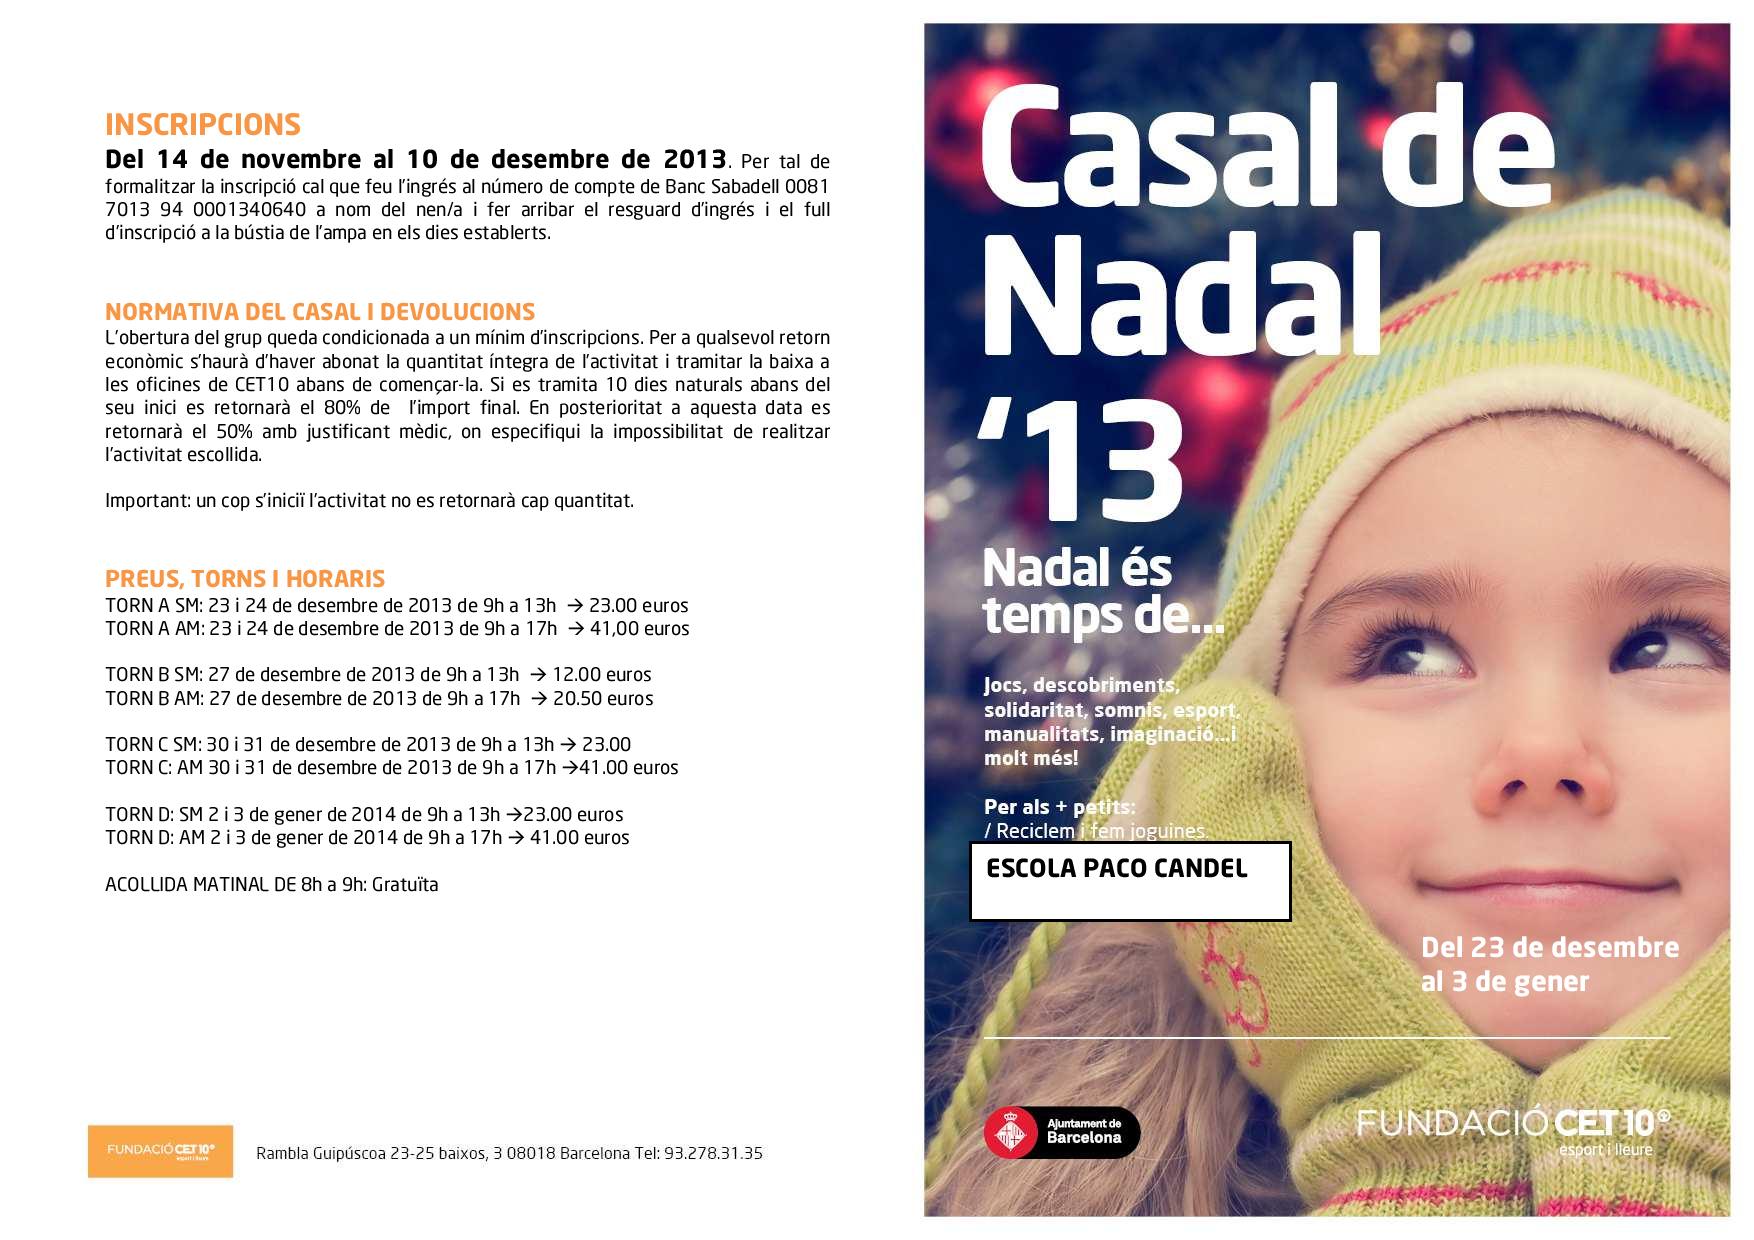 PACO CANDEL CASAL DE NADAL 2013